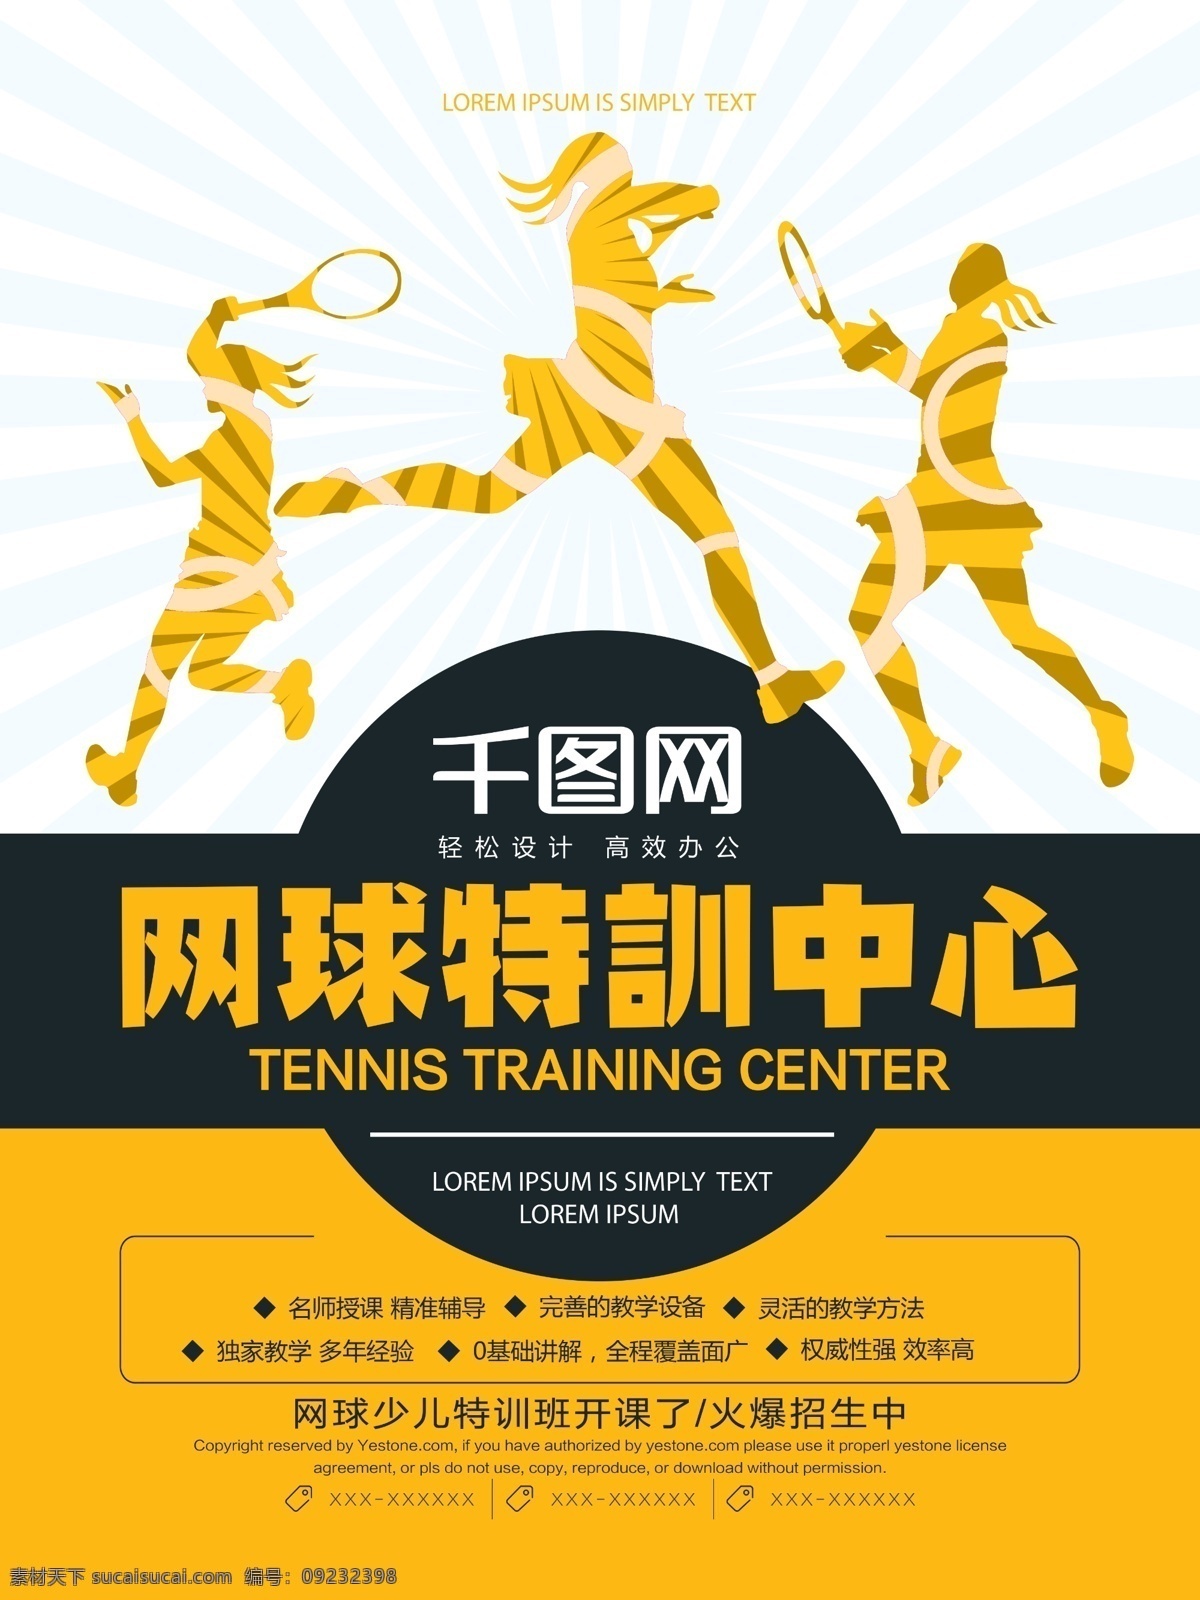 创意 网球培训 体育 海报 网球 网球特训 网球海报 网球运动 中国网球 青少年网球班 网球比赛 网球赛 网球训练 网球馆 网球招生 网球李娜 运动